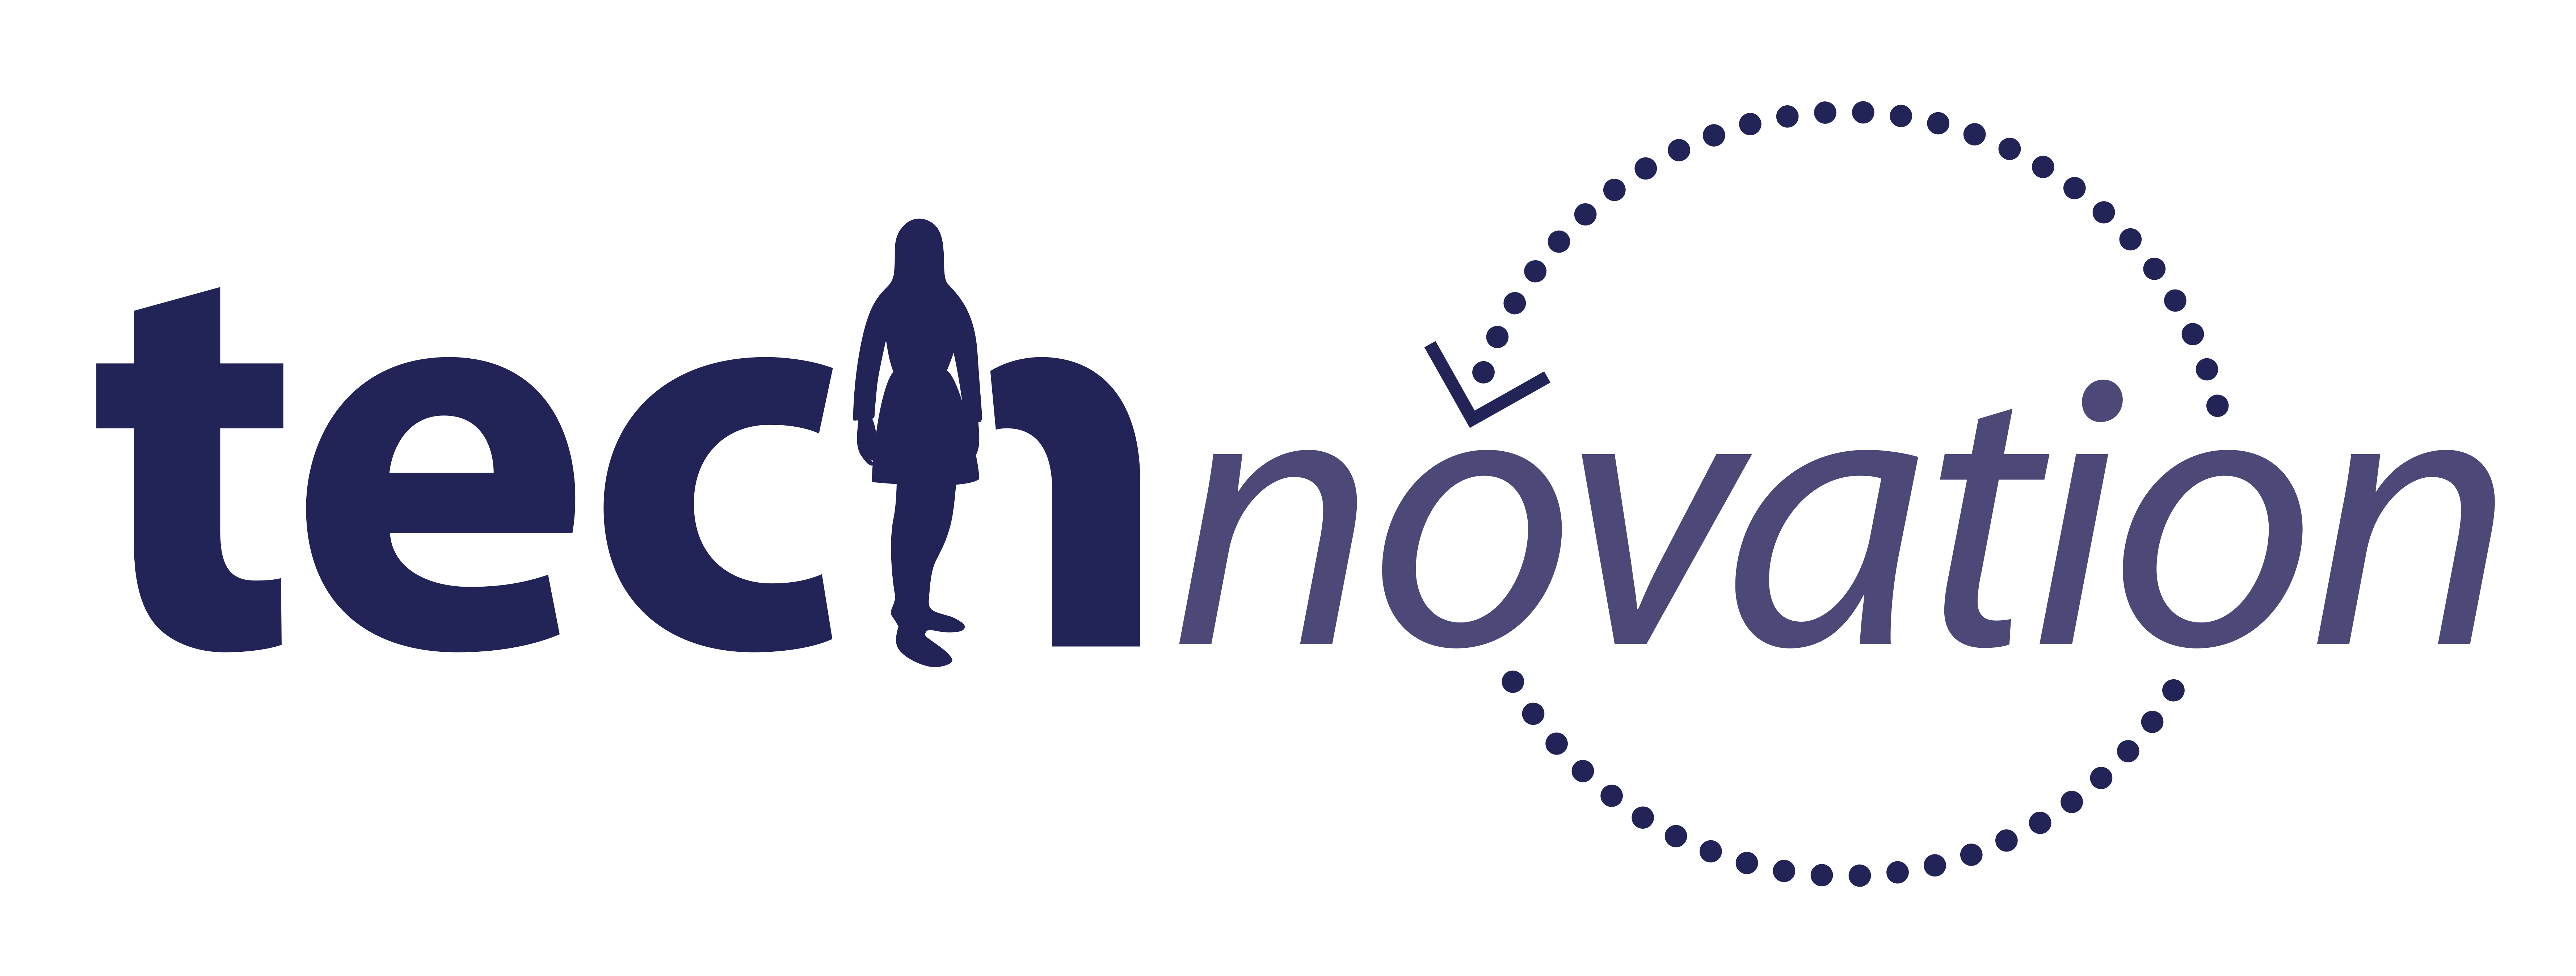 technovation-logo.png